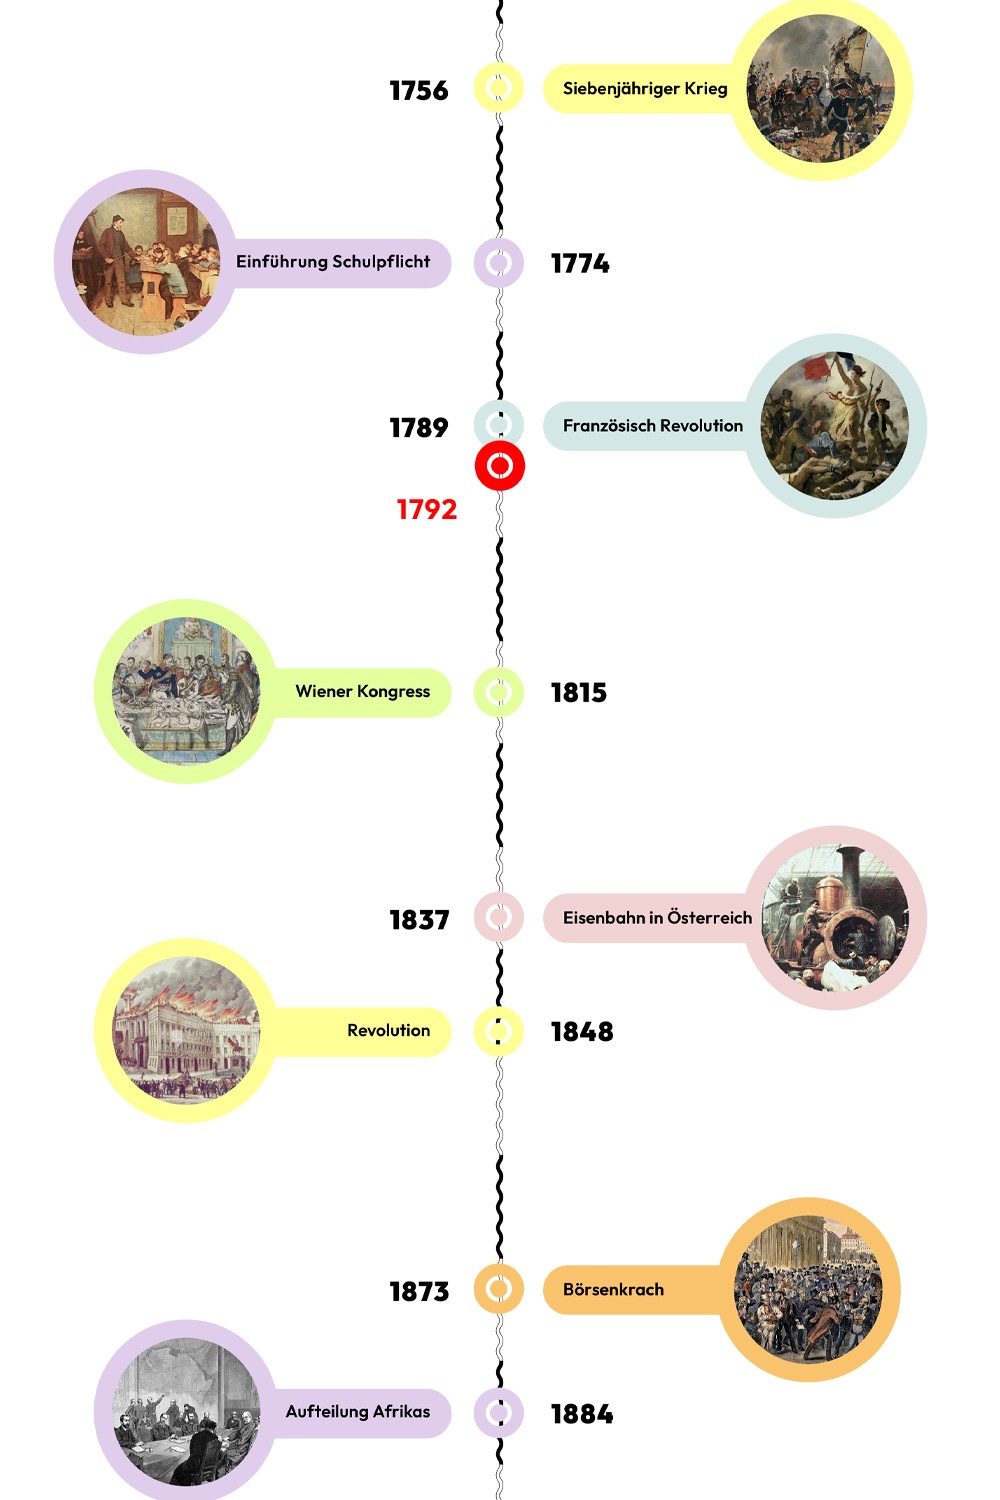 Zeitstrahl mit historischen Ereignissen - 1792 ist hervorgehoben. © wasbishergeschah.at